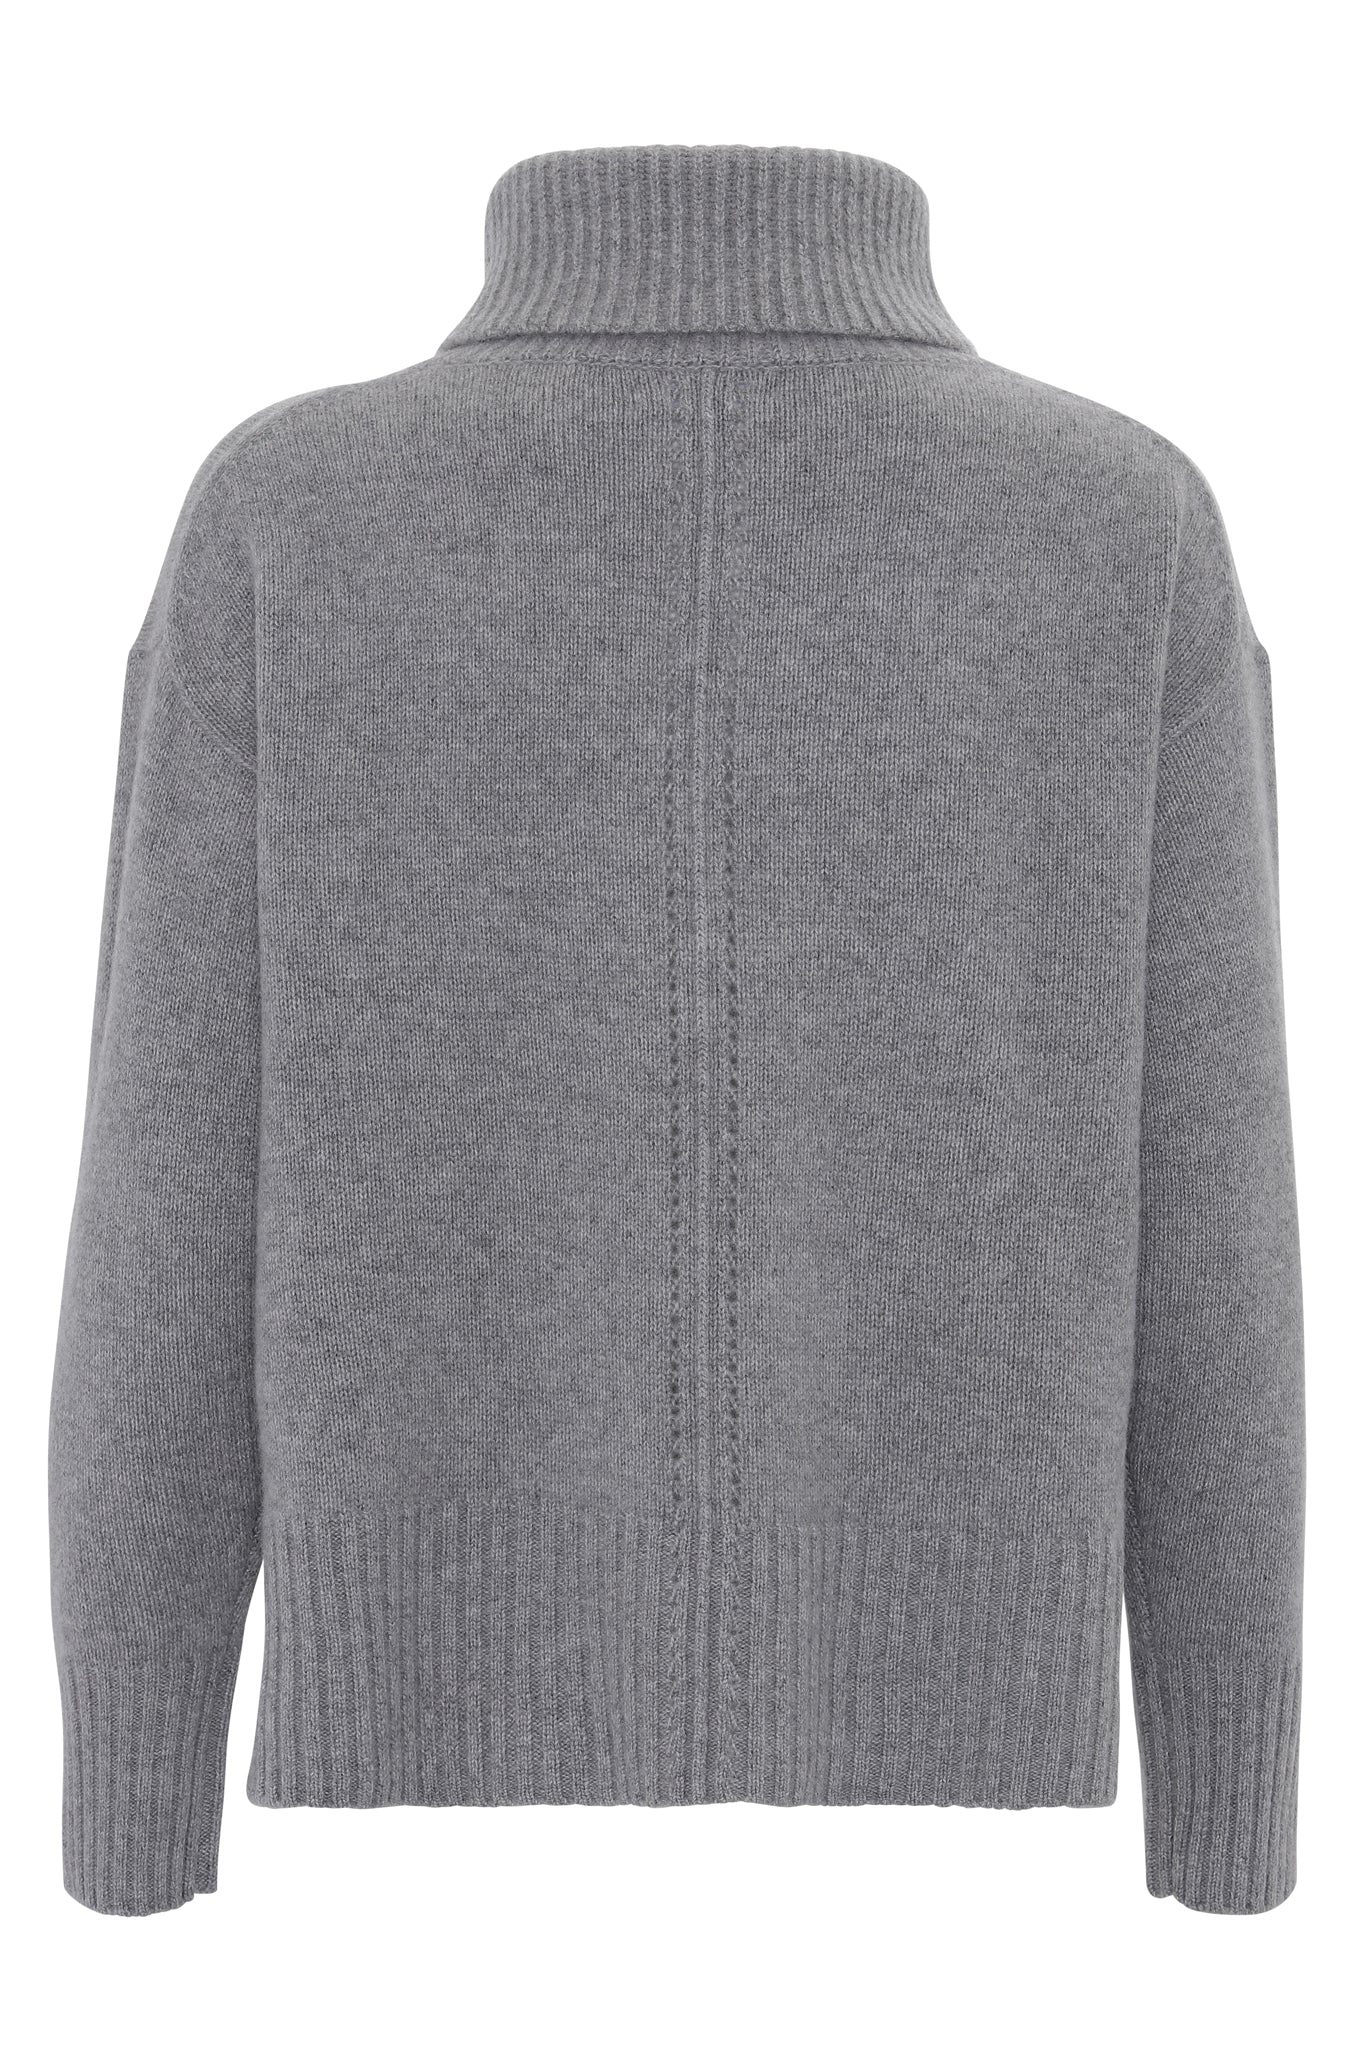 Marilyn - cashmere sweater med turtleneck - Mellemgrå